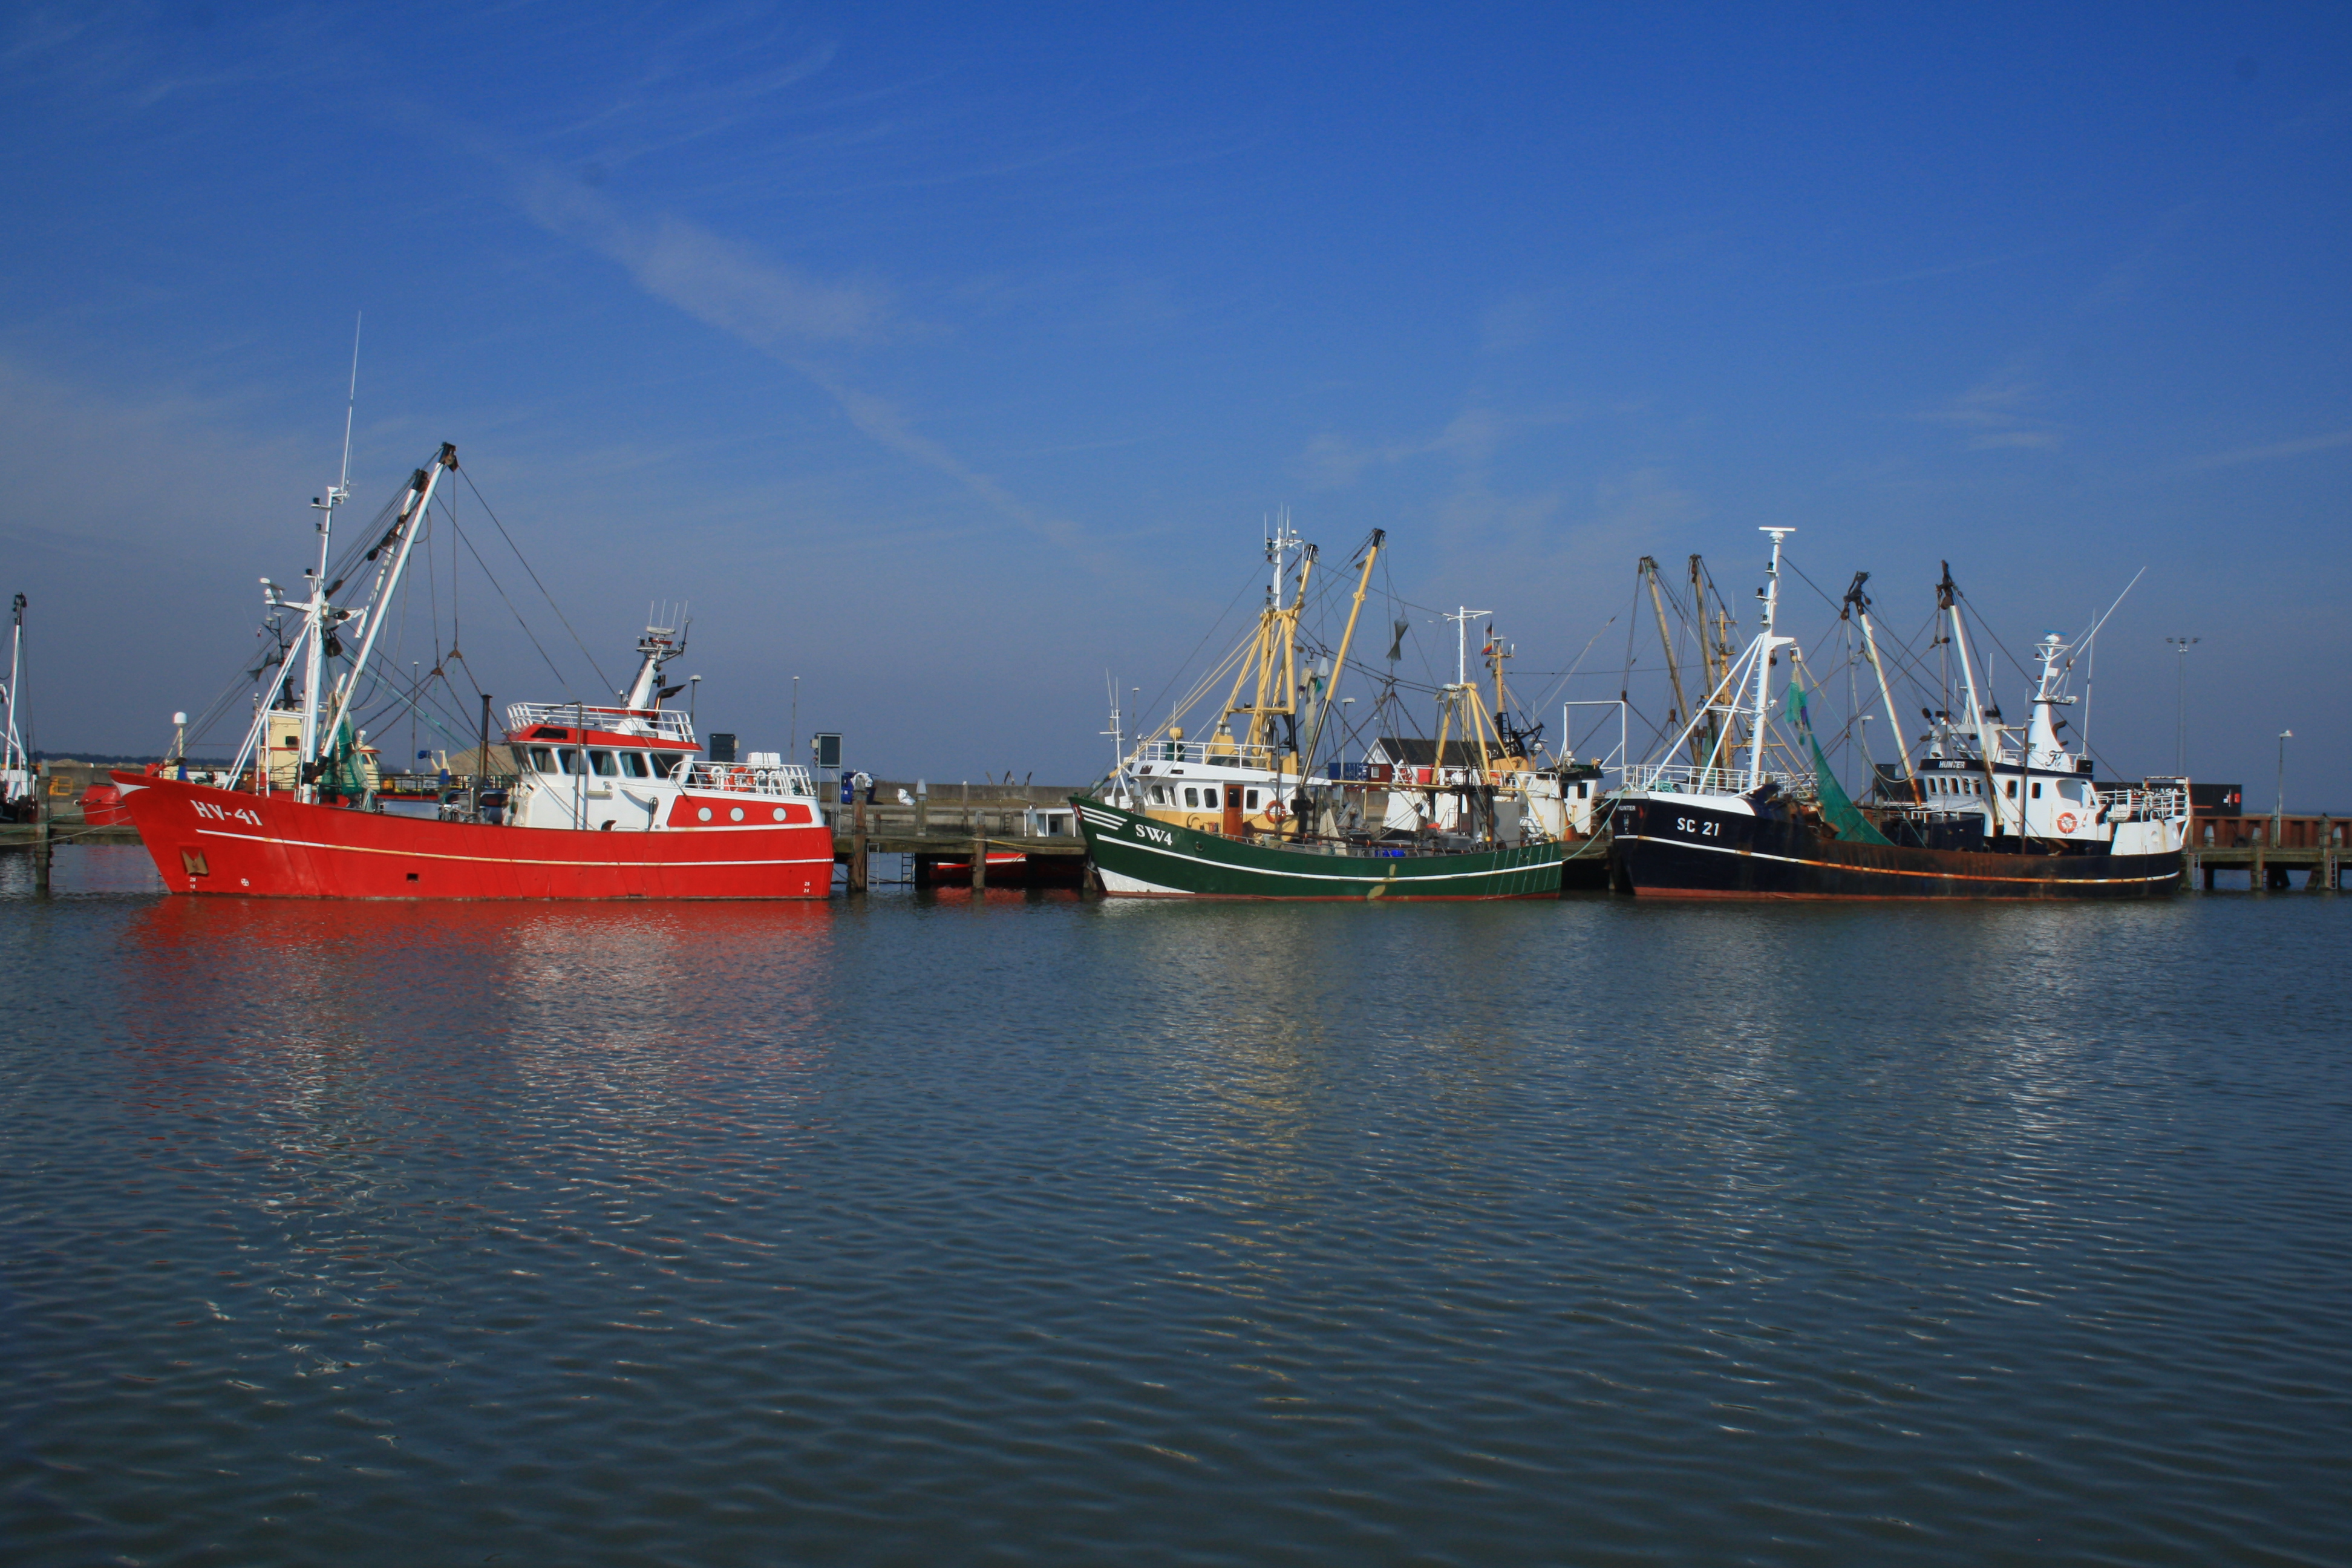 Alle vor Anker: Die letzten drei Schiffe der Krabbenfischer im Hafen. Der Bau des Windparks in der Nordsee wird vorangetrieben.